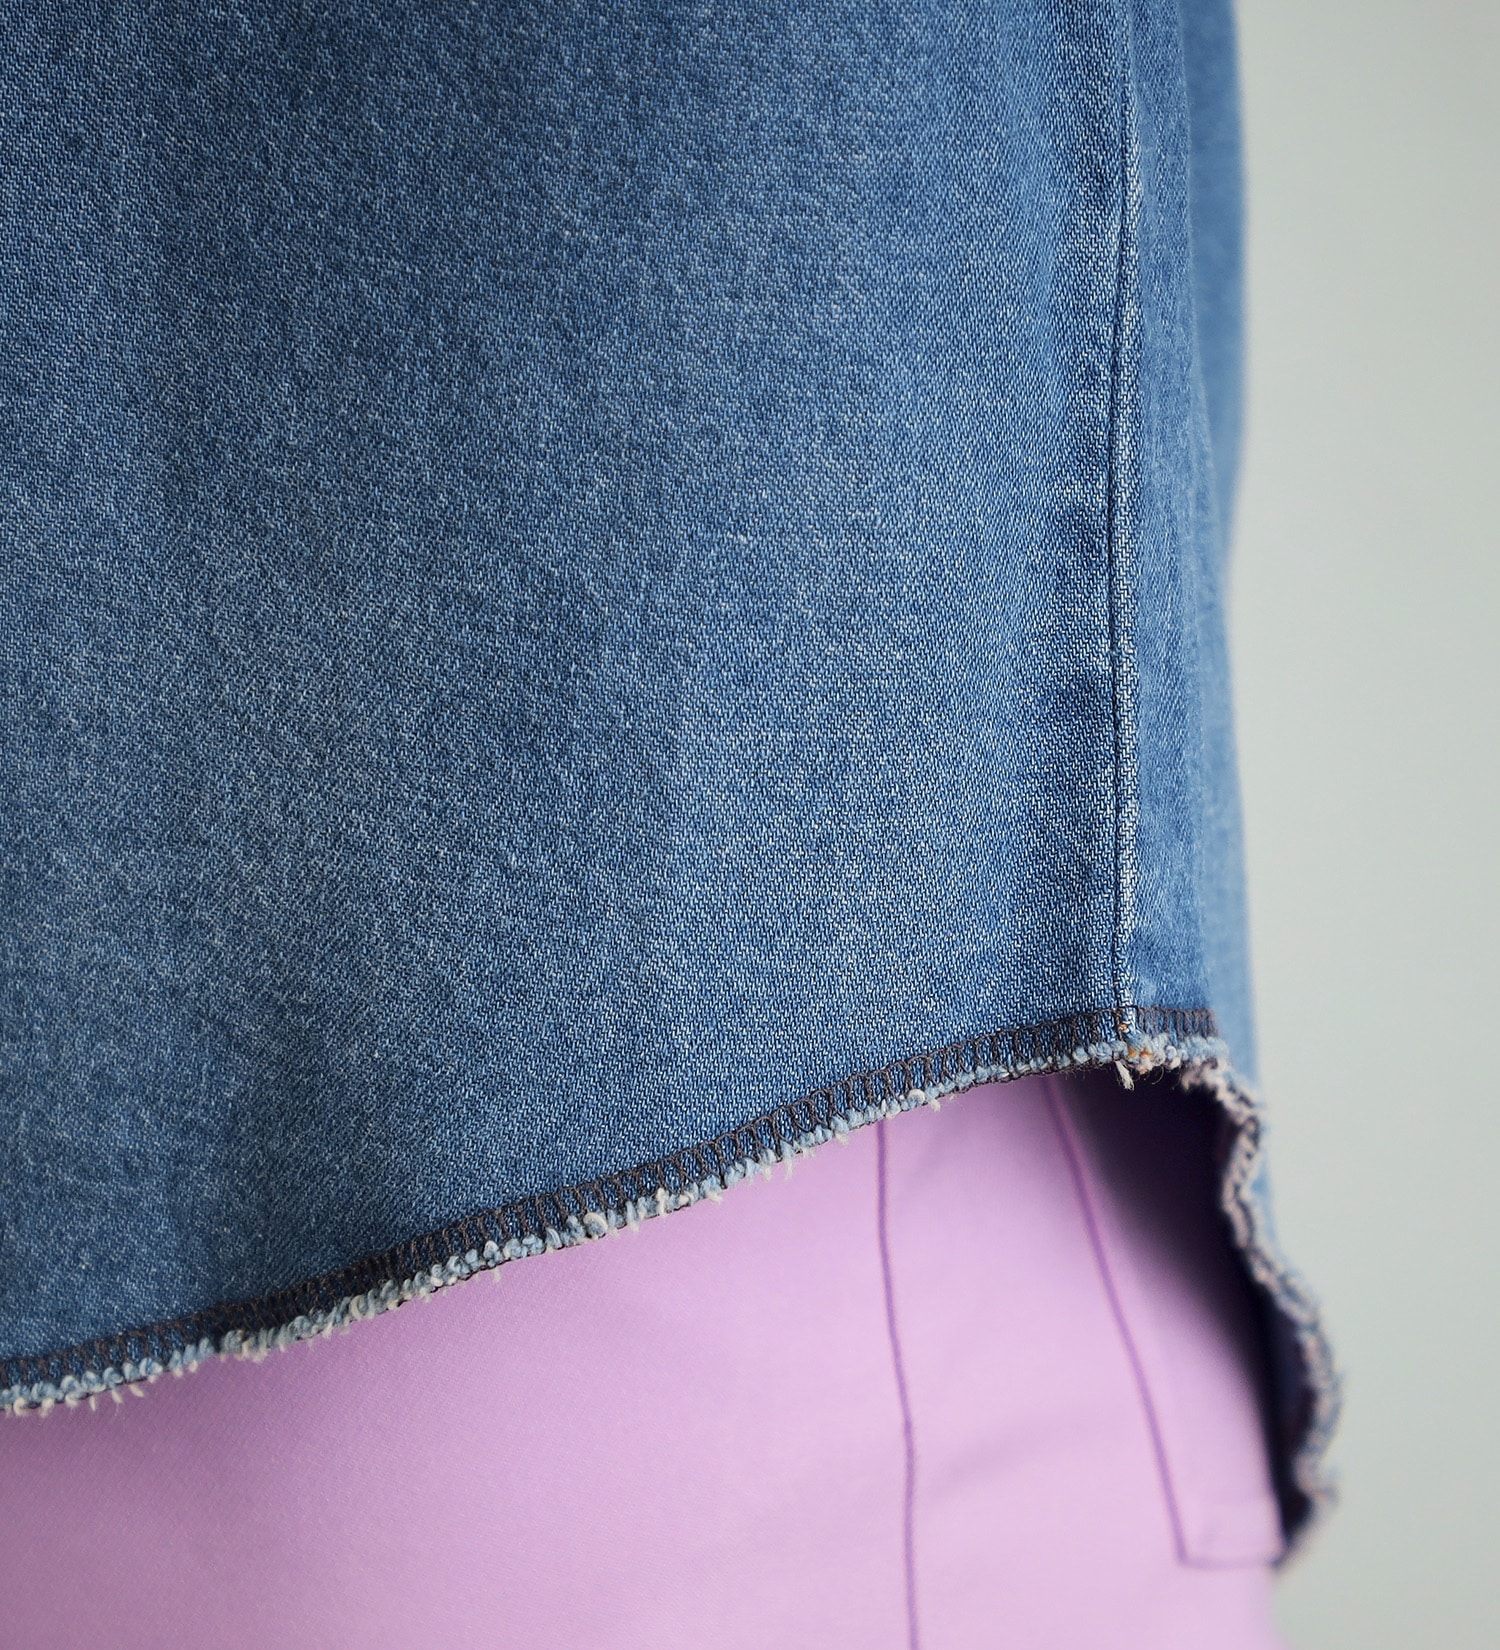 Wrangler(ラングラー)の【NewJeans着用】SPUR3月号掲載アイテム US ORIGINALS/127MW　デニムシャツ|トップス/シャツ/ブラウス/メンズ|中色ブルー